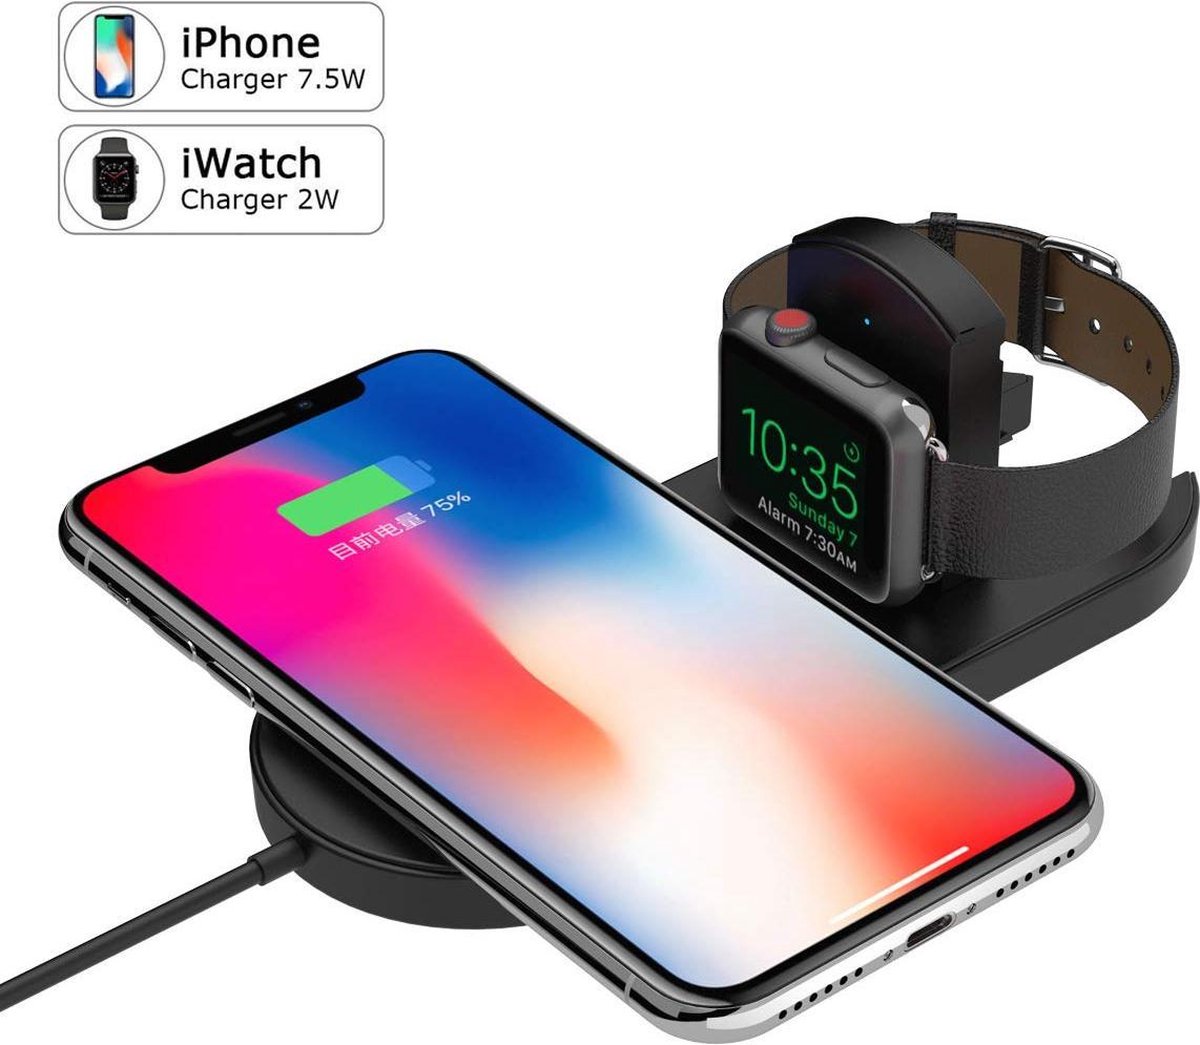 BrightNerd - Wireless Dock - Bureau lader - iPhone + Apple Watch Oplader - Geschikt voor Apple Watch 1 t/m 5 - iPhone 8 / X / XR / XS iPhone 11 / 11 Pro / Max / Samsung S10 / S9 - Docking Station Qi - BrightNerd